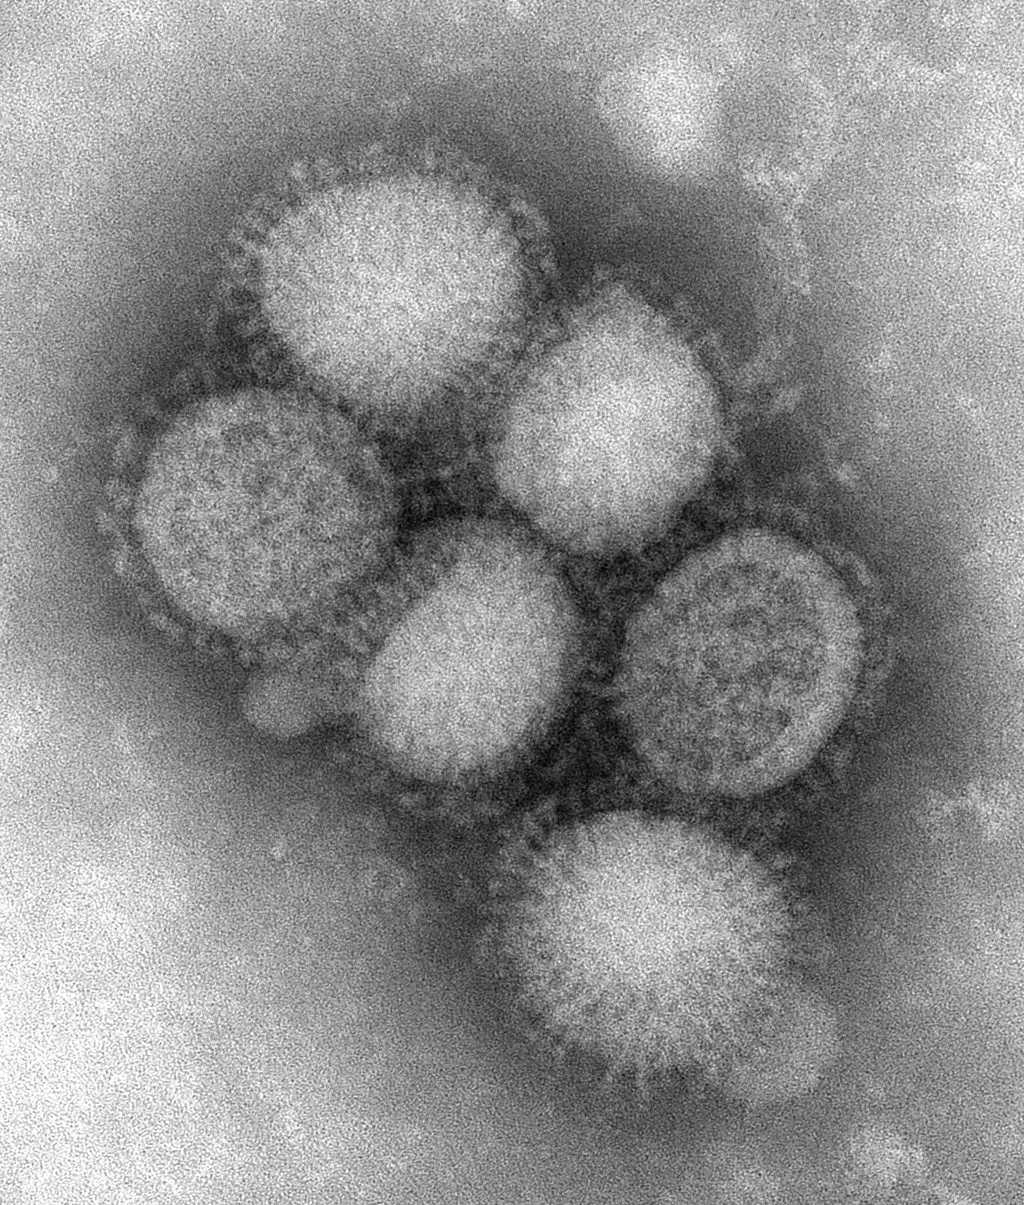 Le virus A(H1N1). Des millions de personnes l'ont rencontré et vaincu. © Centers for Disease Control and Prevention